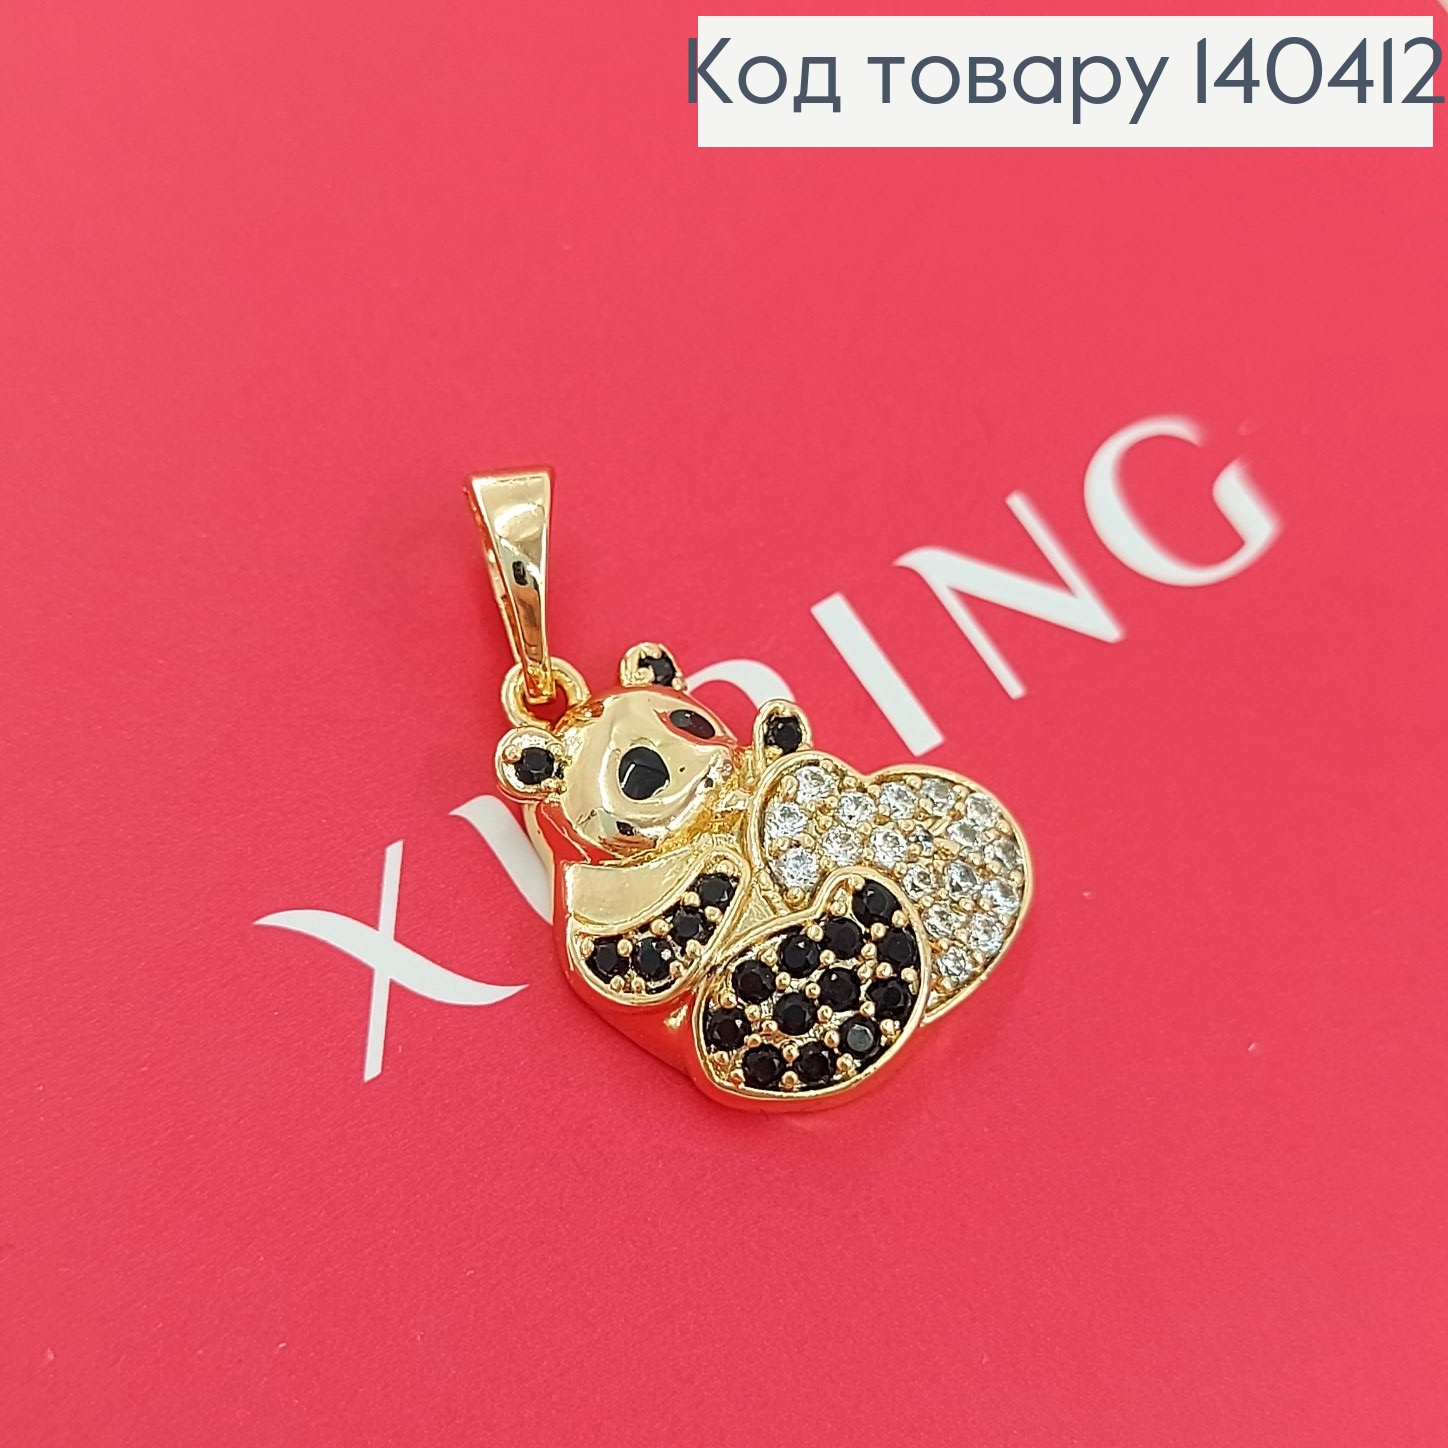 Кулон Влюбленный мишка с сердечком в камнях Xuping 18К 140412 фото 2